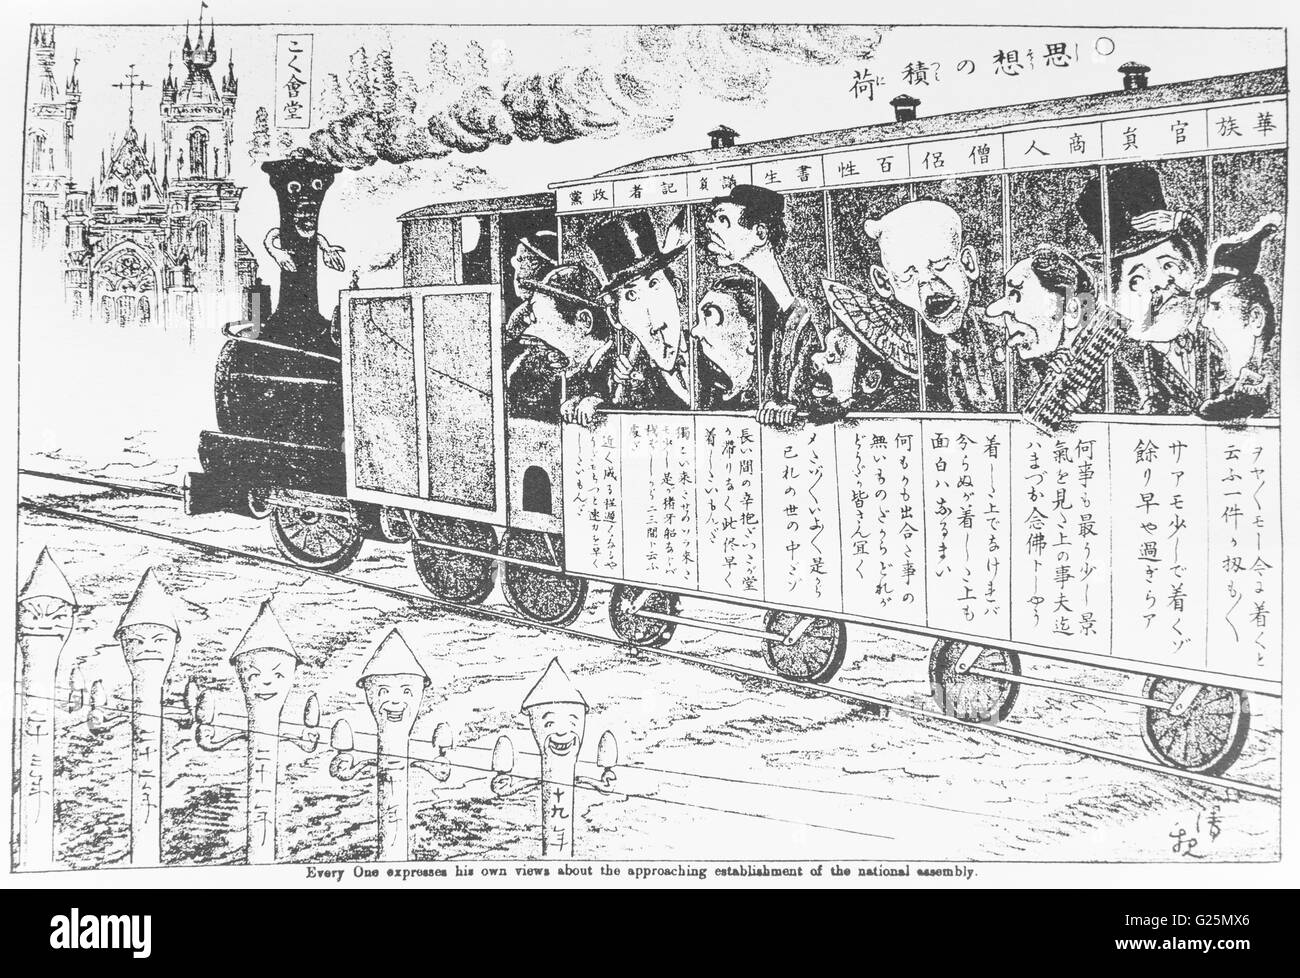 Cargaison de pensée, publié sur Maru Maru, Feburuary Chimbun sur 6e 1886. Kobayashi Kiyochika artiste. Représentant d'avis de diverses classes sociales pour l'ouverture du parlement. Banque D'Images